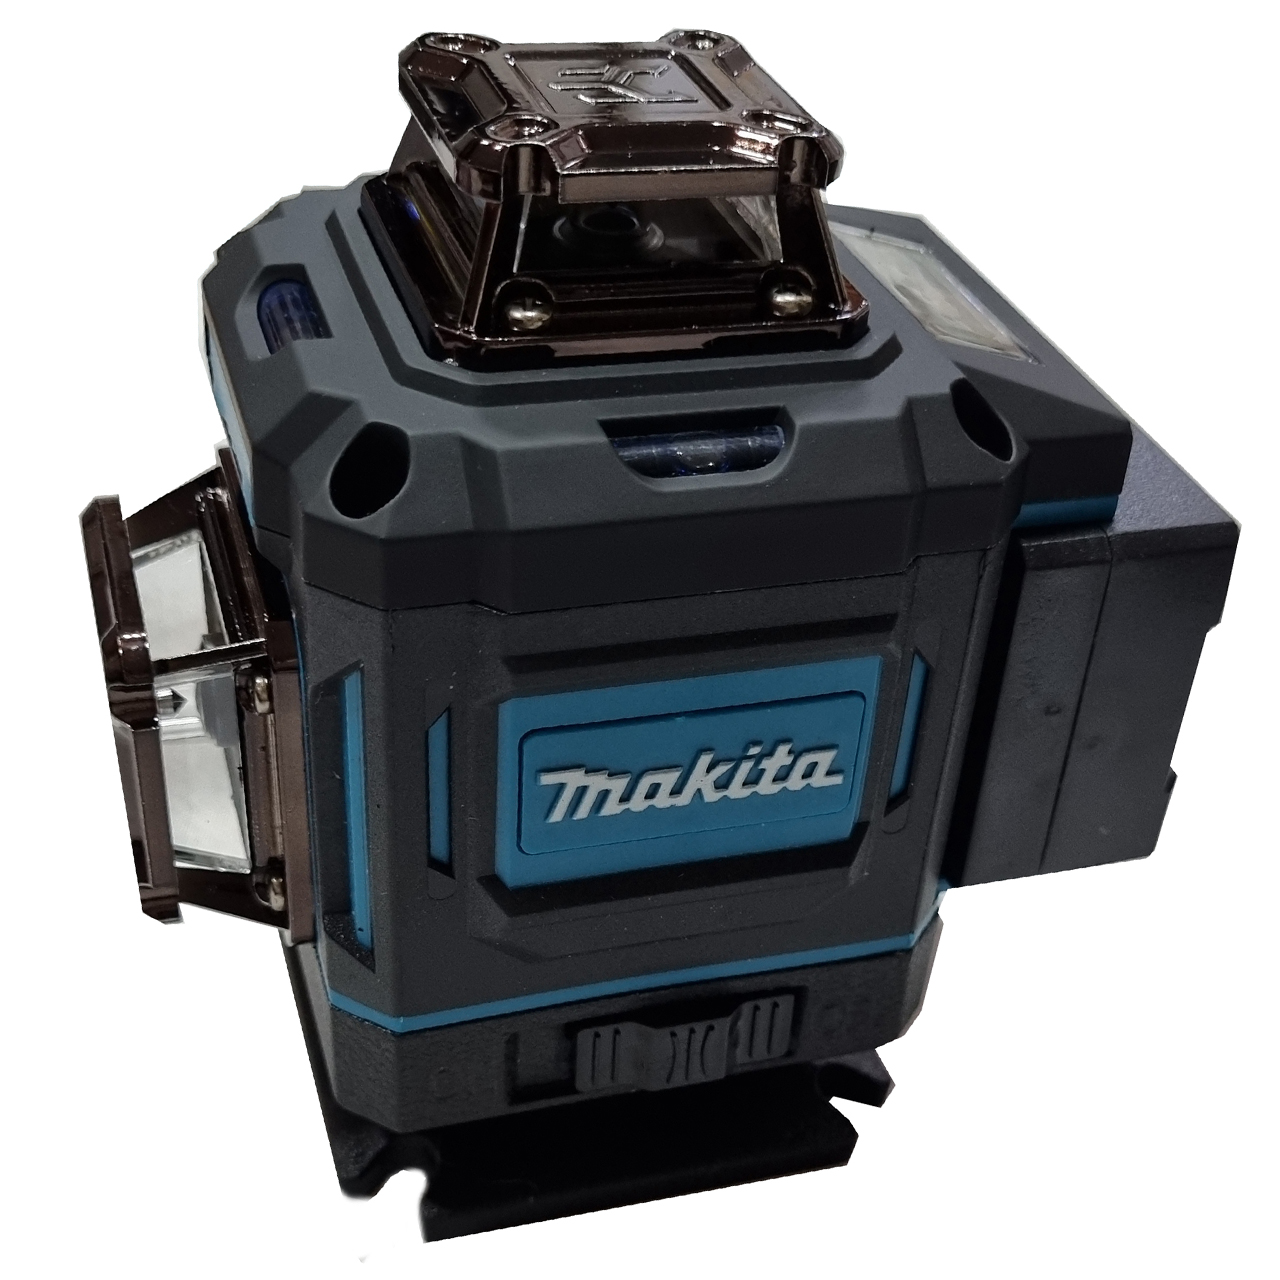 تراز لیزری ماکیتا مدل 4 بعدی کد Makita 360-4D